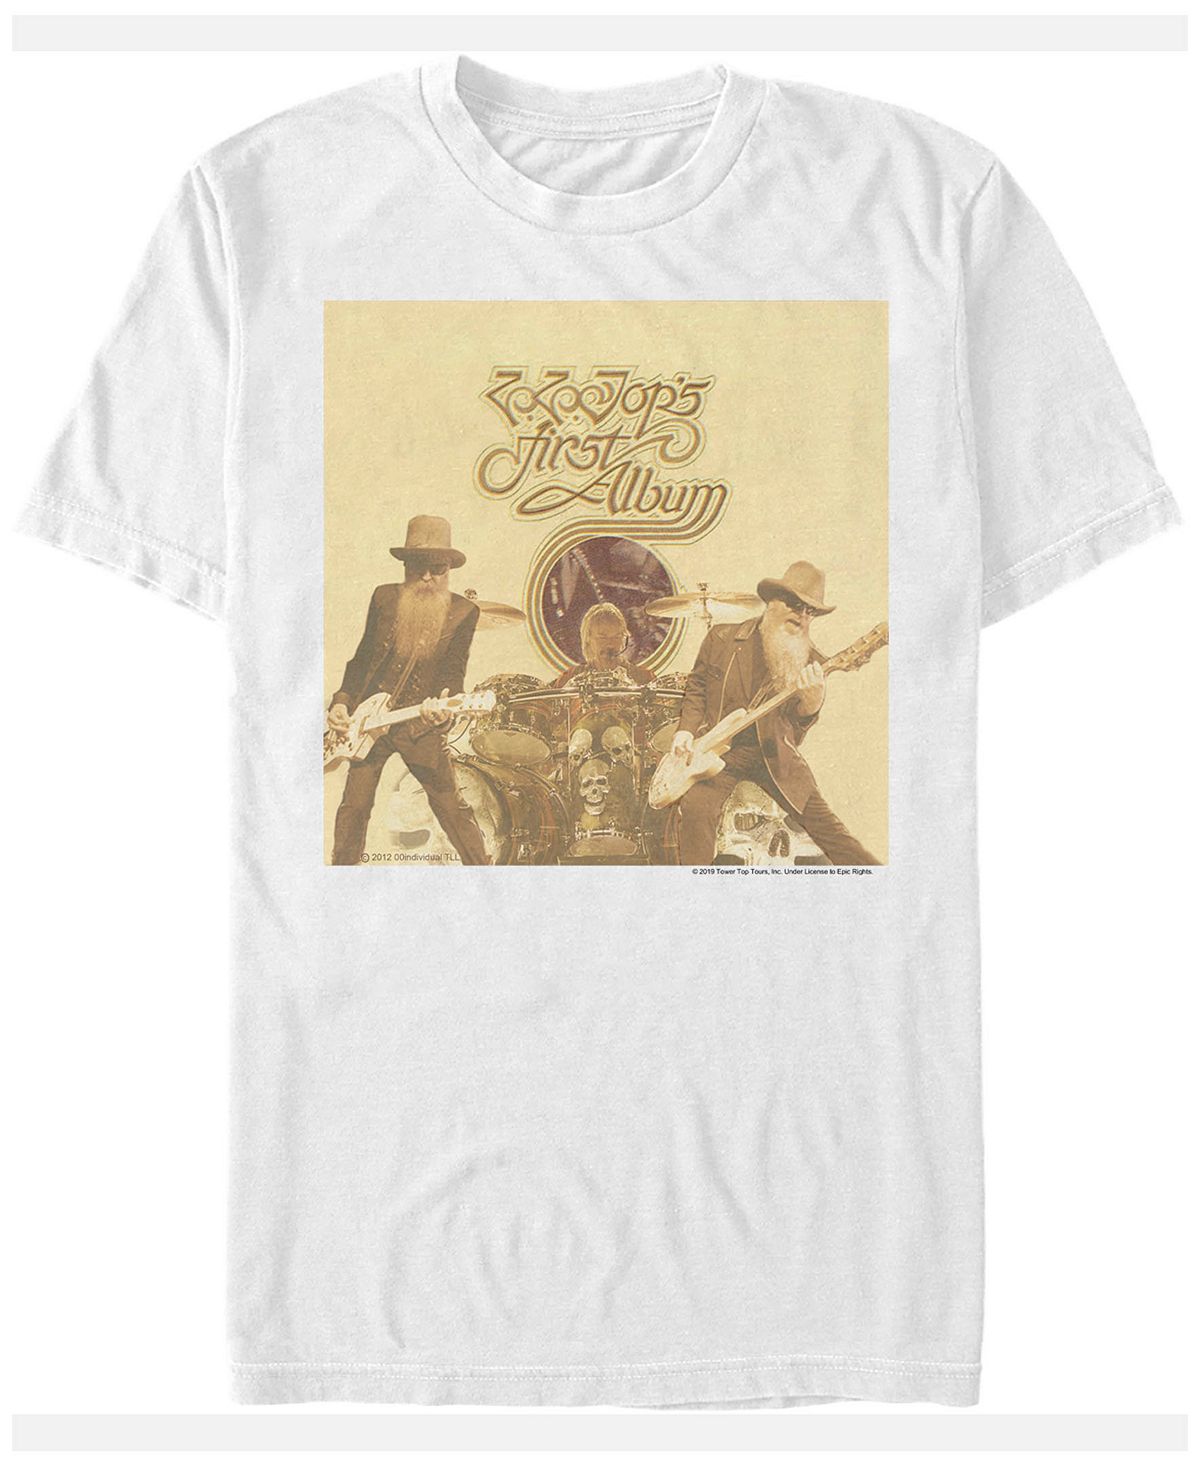 Мужская футболка с коротким рукавом с обложкой первого альбома Fifth Sun, белый